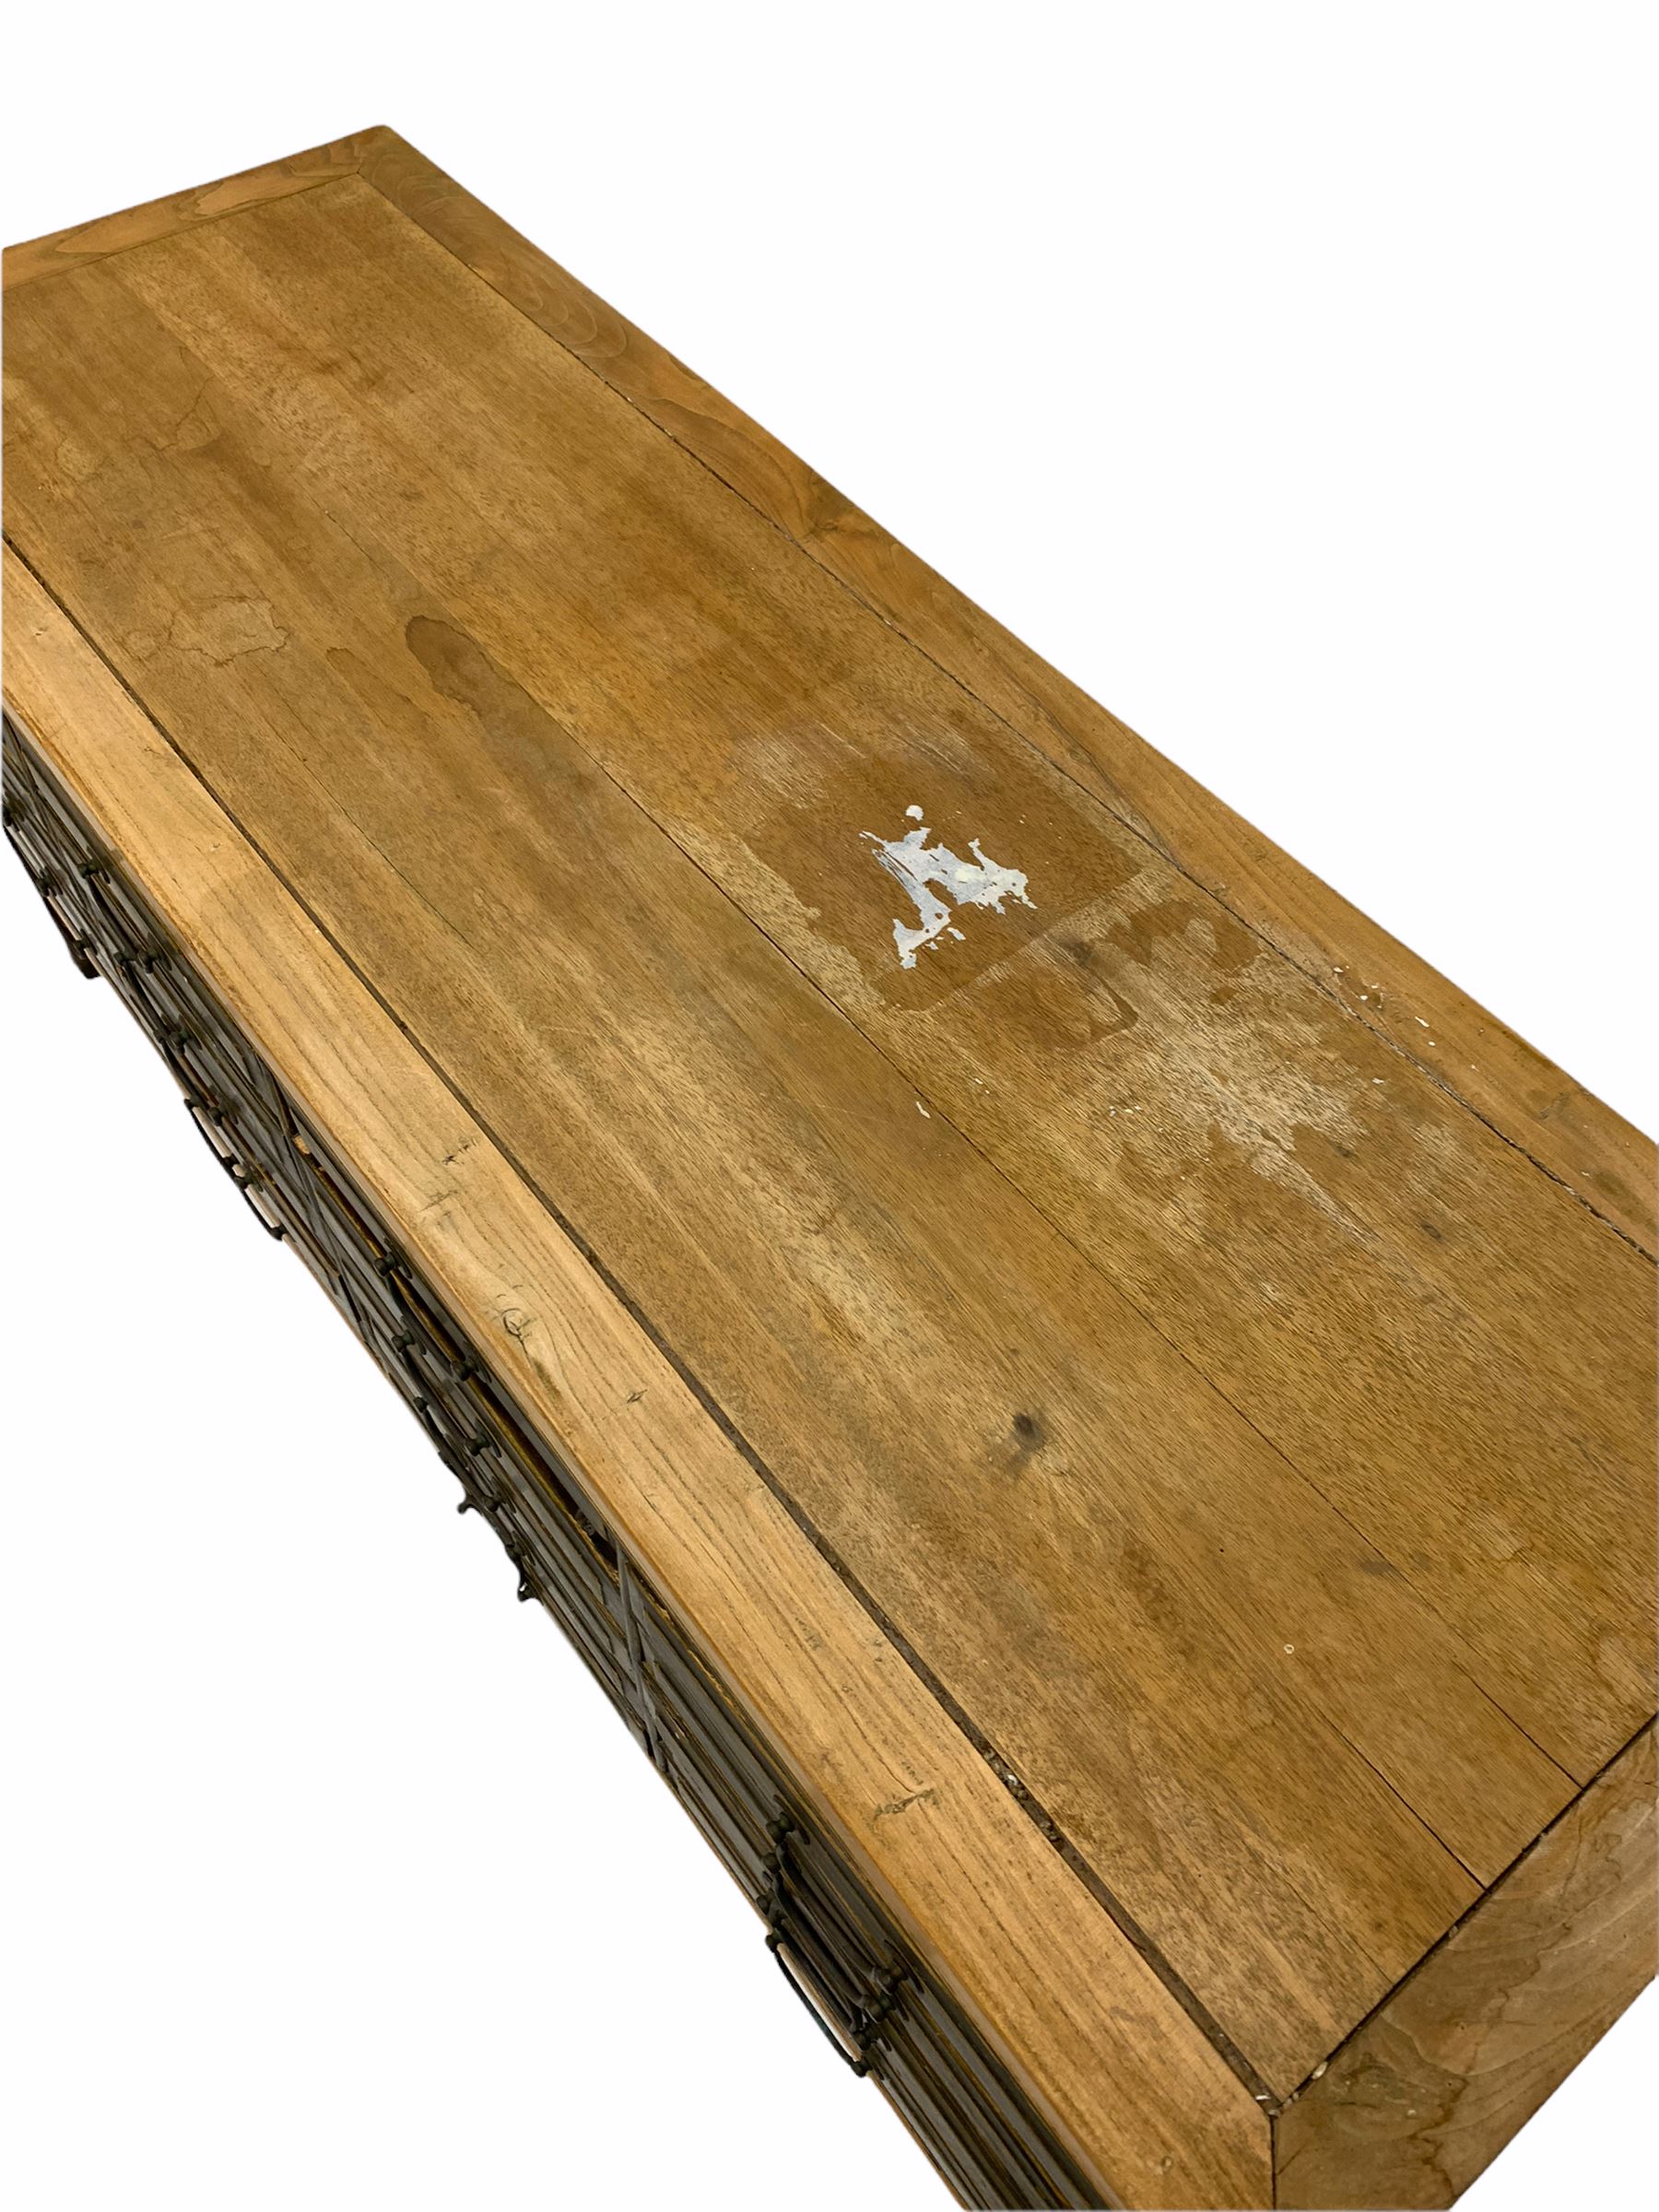 Chinese hardwood multi drawer sideboard - Image 3 of 3